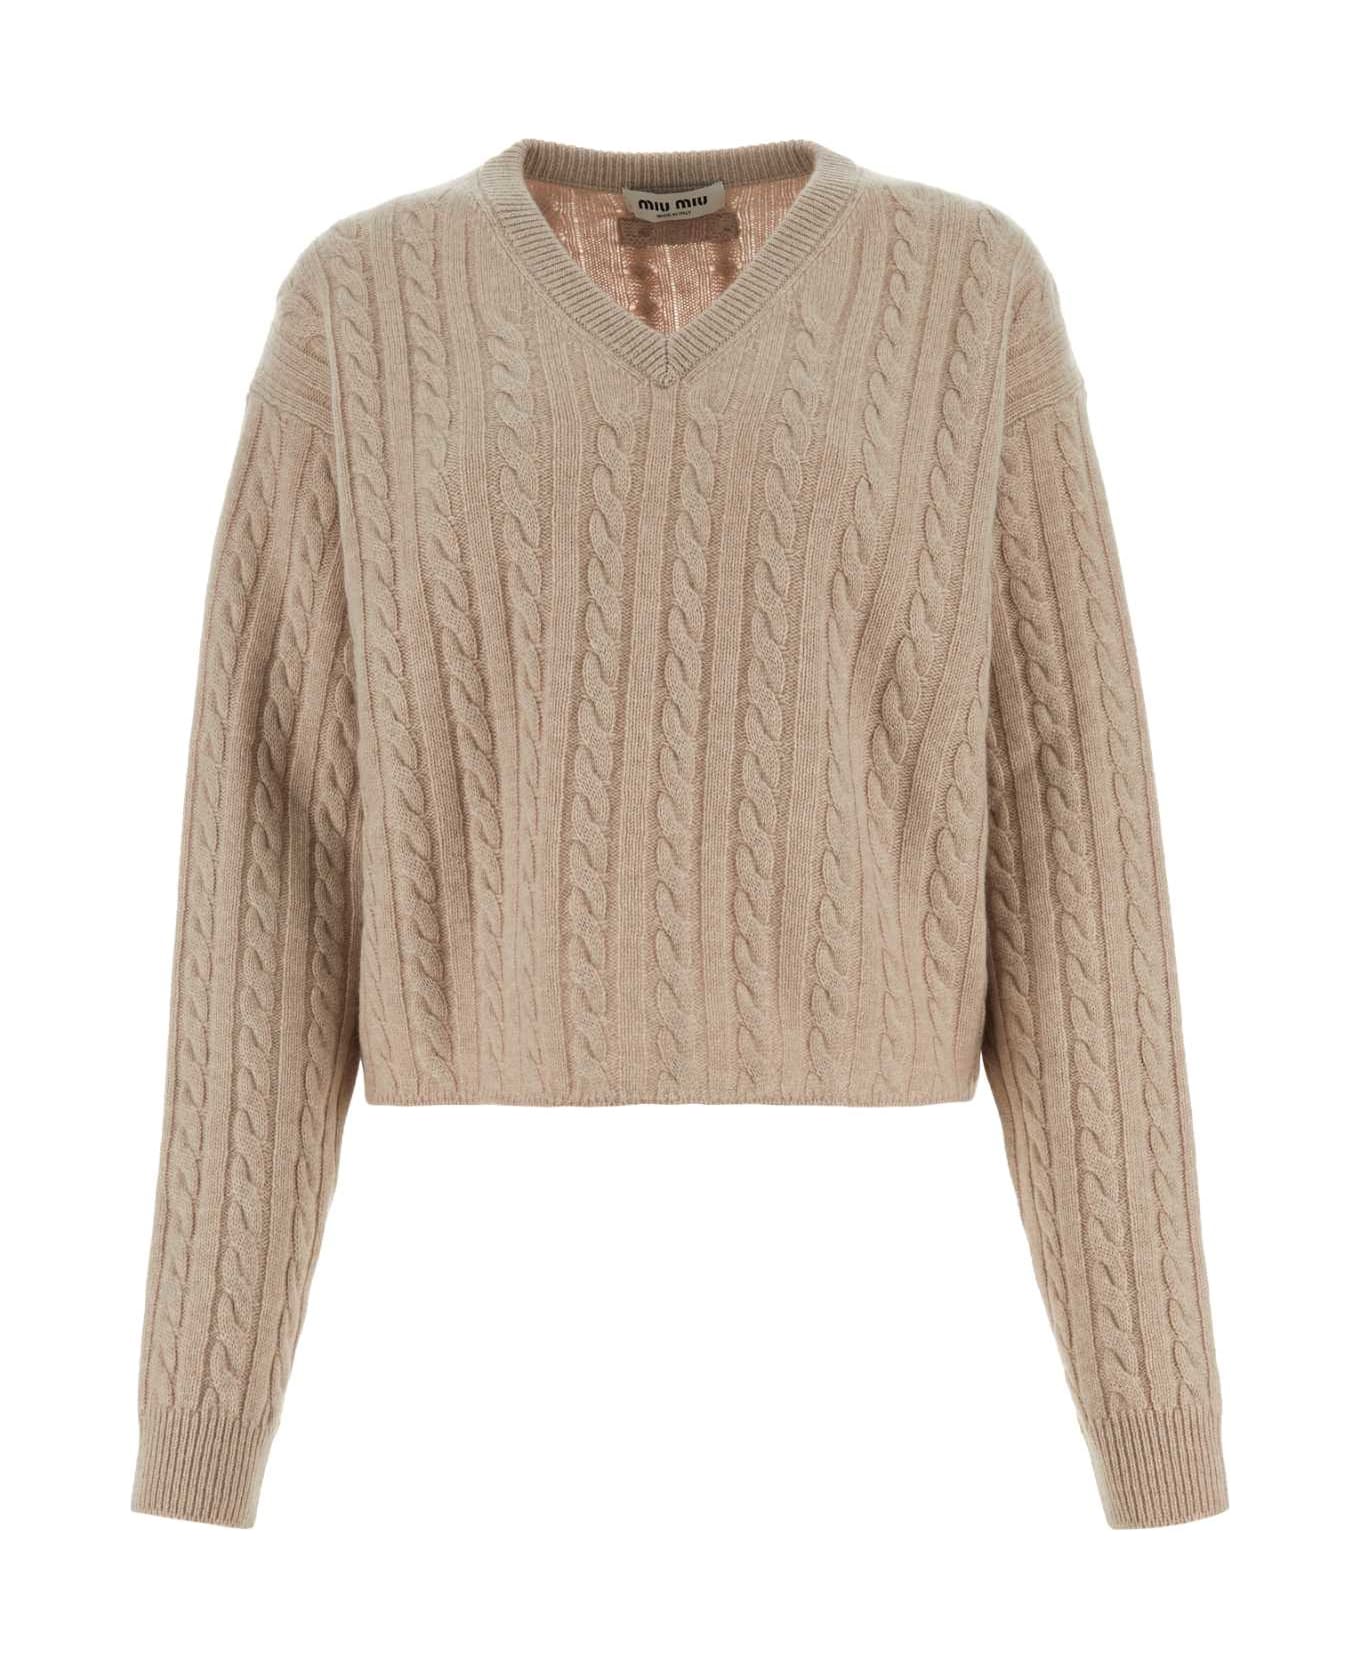 Miu Miu Sand Cashmere Sweater - CALCE